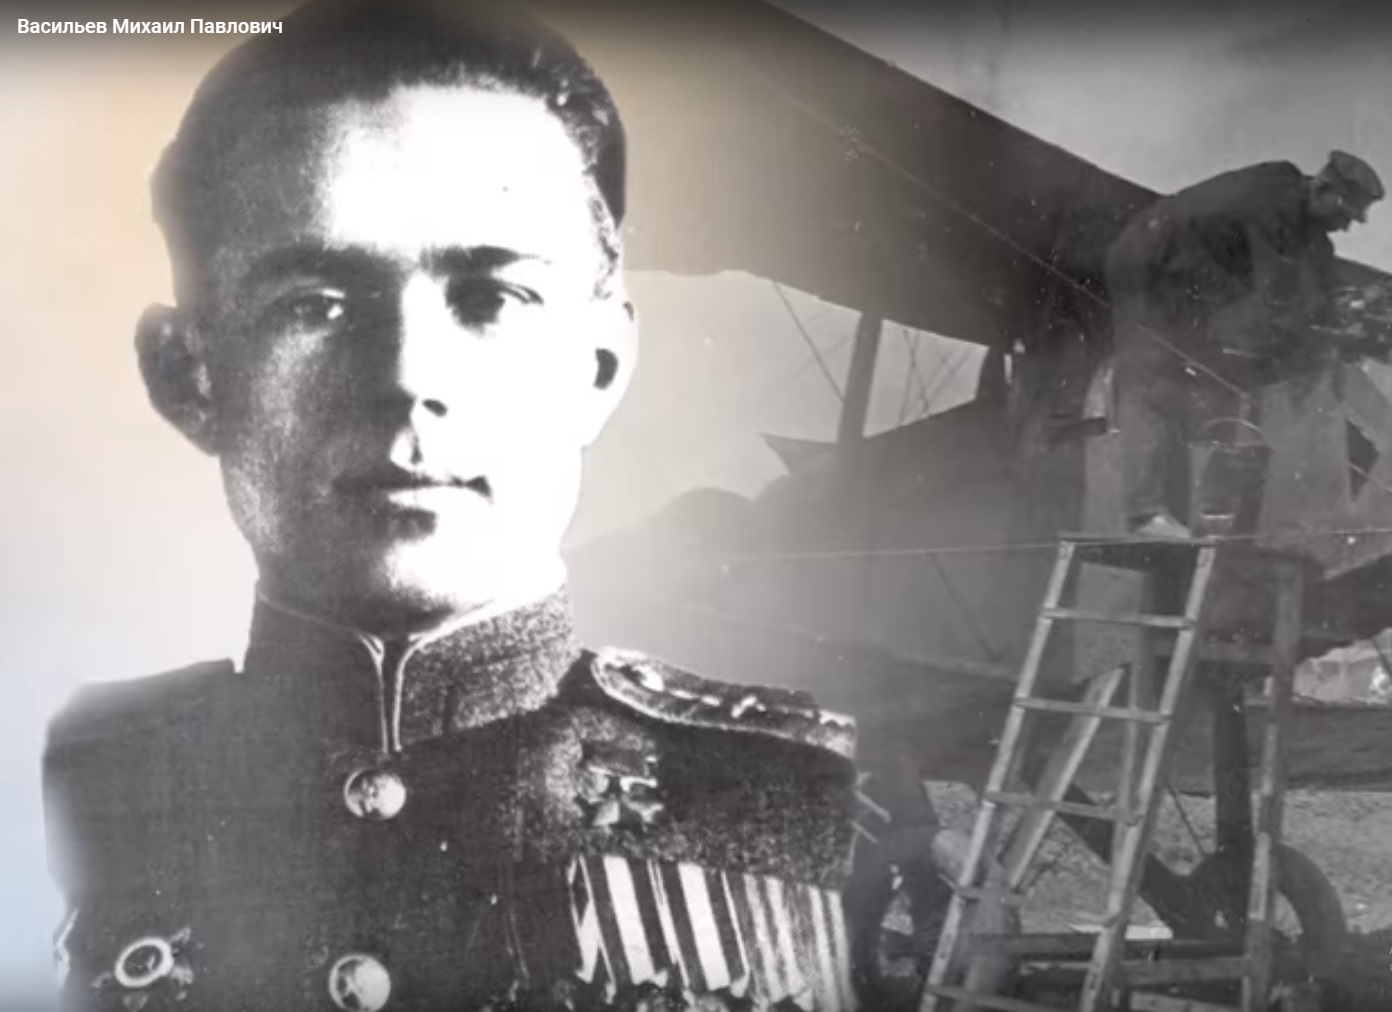 11 ноября исполняется 101 год со дня рождения Михаила Павловича Васильева.